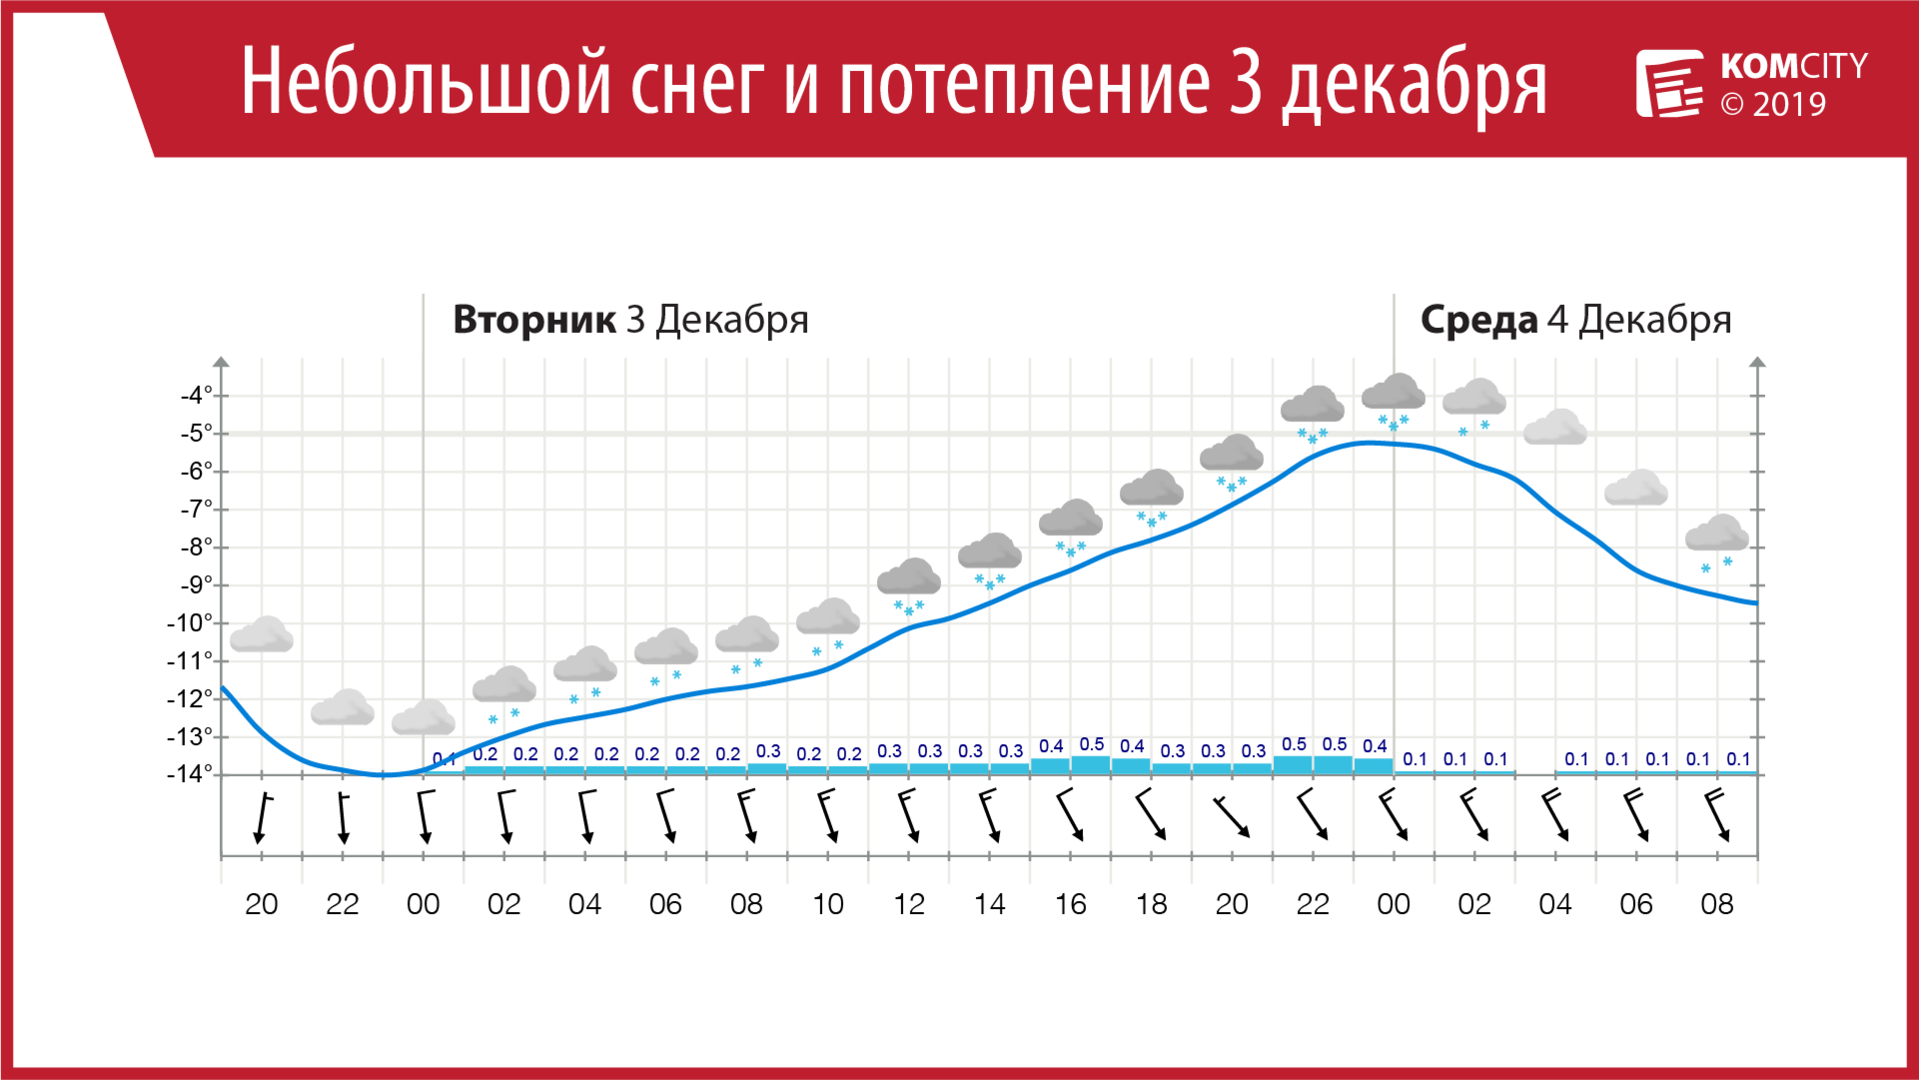 Во вторник и среду в Комсомольске-на-Амуре будет тепло и снежно